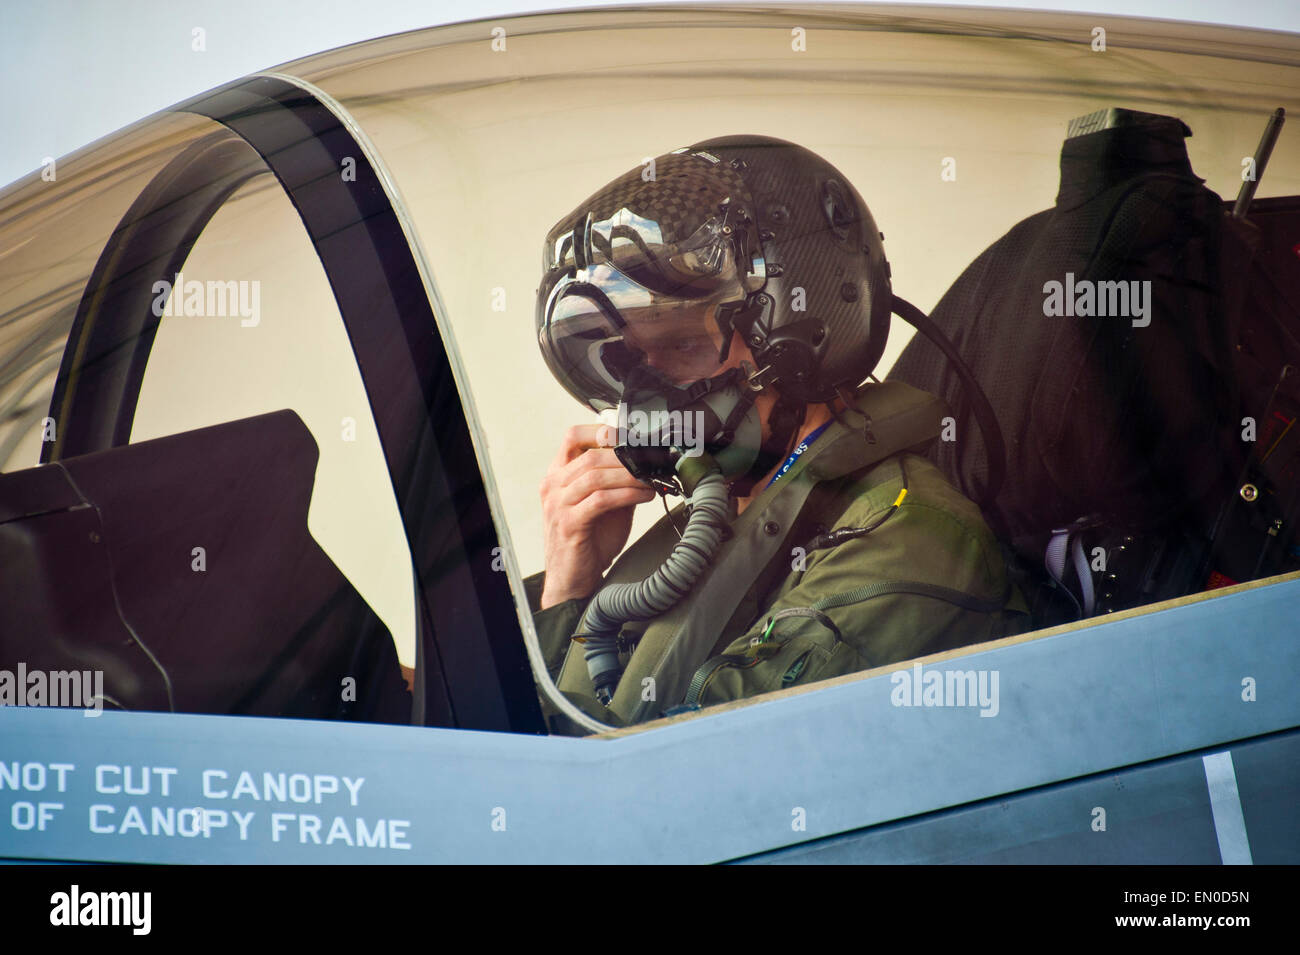 Royal Australian Air Force Squadron Leader Andrew Jackson, F-35 Lightning II élève-pilote, se prépare à quitter son F-35A après avoir terminé son dernier vol le 23 avril 2015 sur la base aérienne d'Eglin, en Floride. Jackson a fait l'histoire comme le premier pilote australien à voler dans le F-35A. Banque D'Images